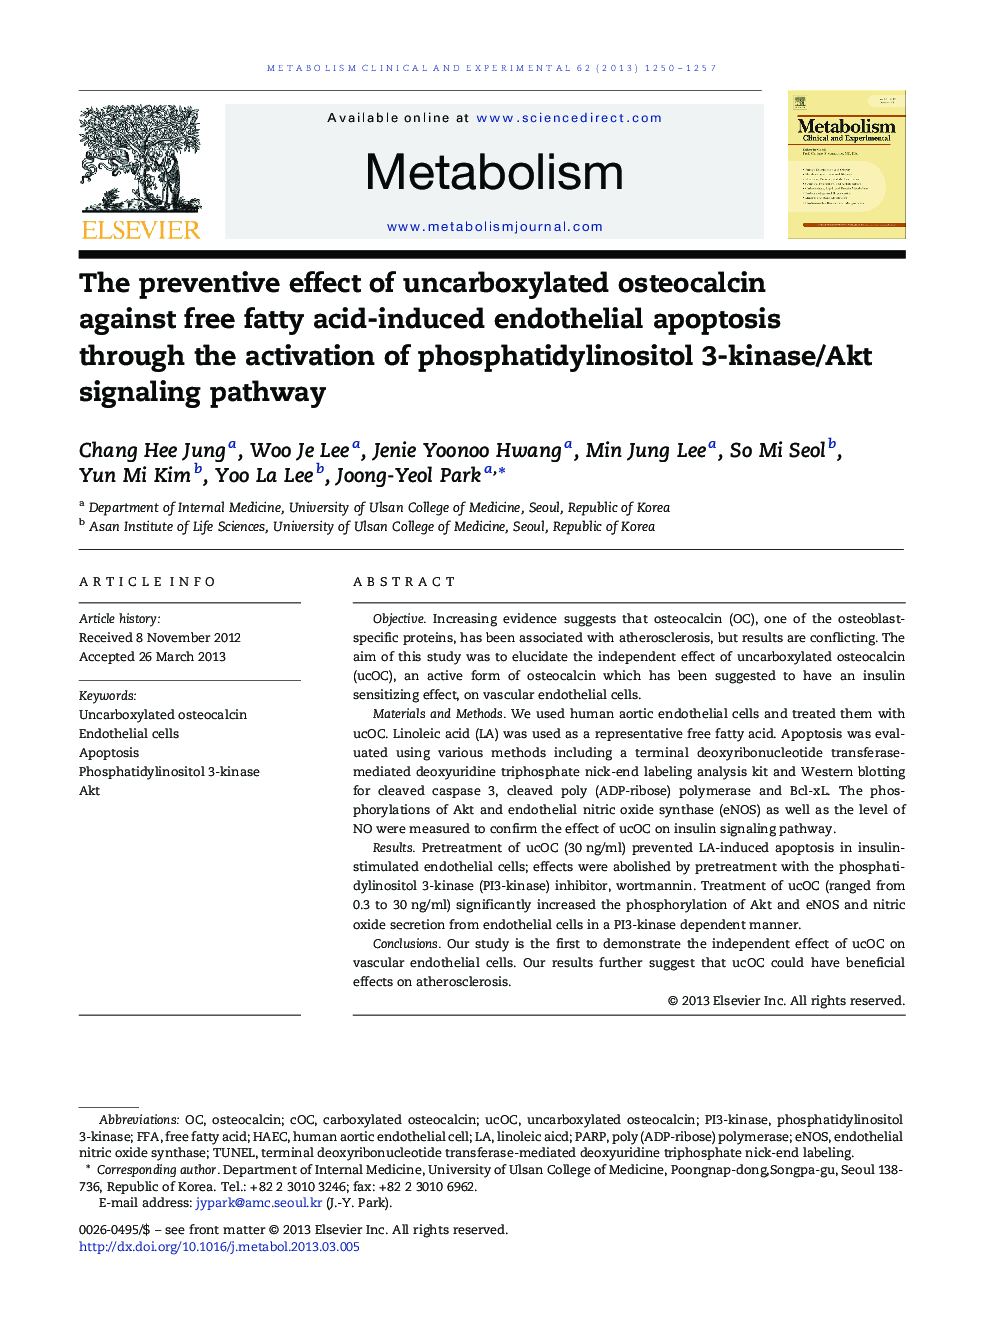 اثرات پیشگیرانه استئوکالسین غیر قلبی بی کربن بر آپوپتوز اندوتلیال ناشی از اسید چرب آزاد از طریق فعال سازی مسیر سیگنالینگ فسفاتیدیلینواستیل 3-کیناز / آکت 